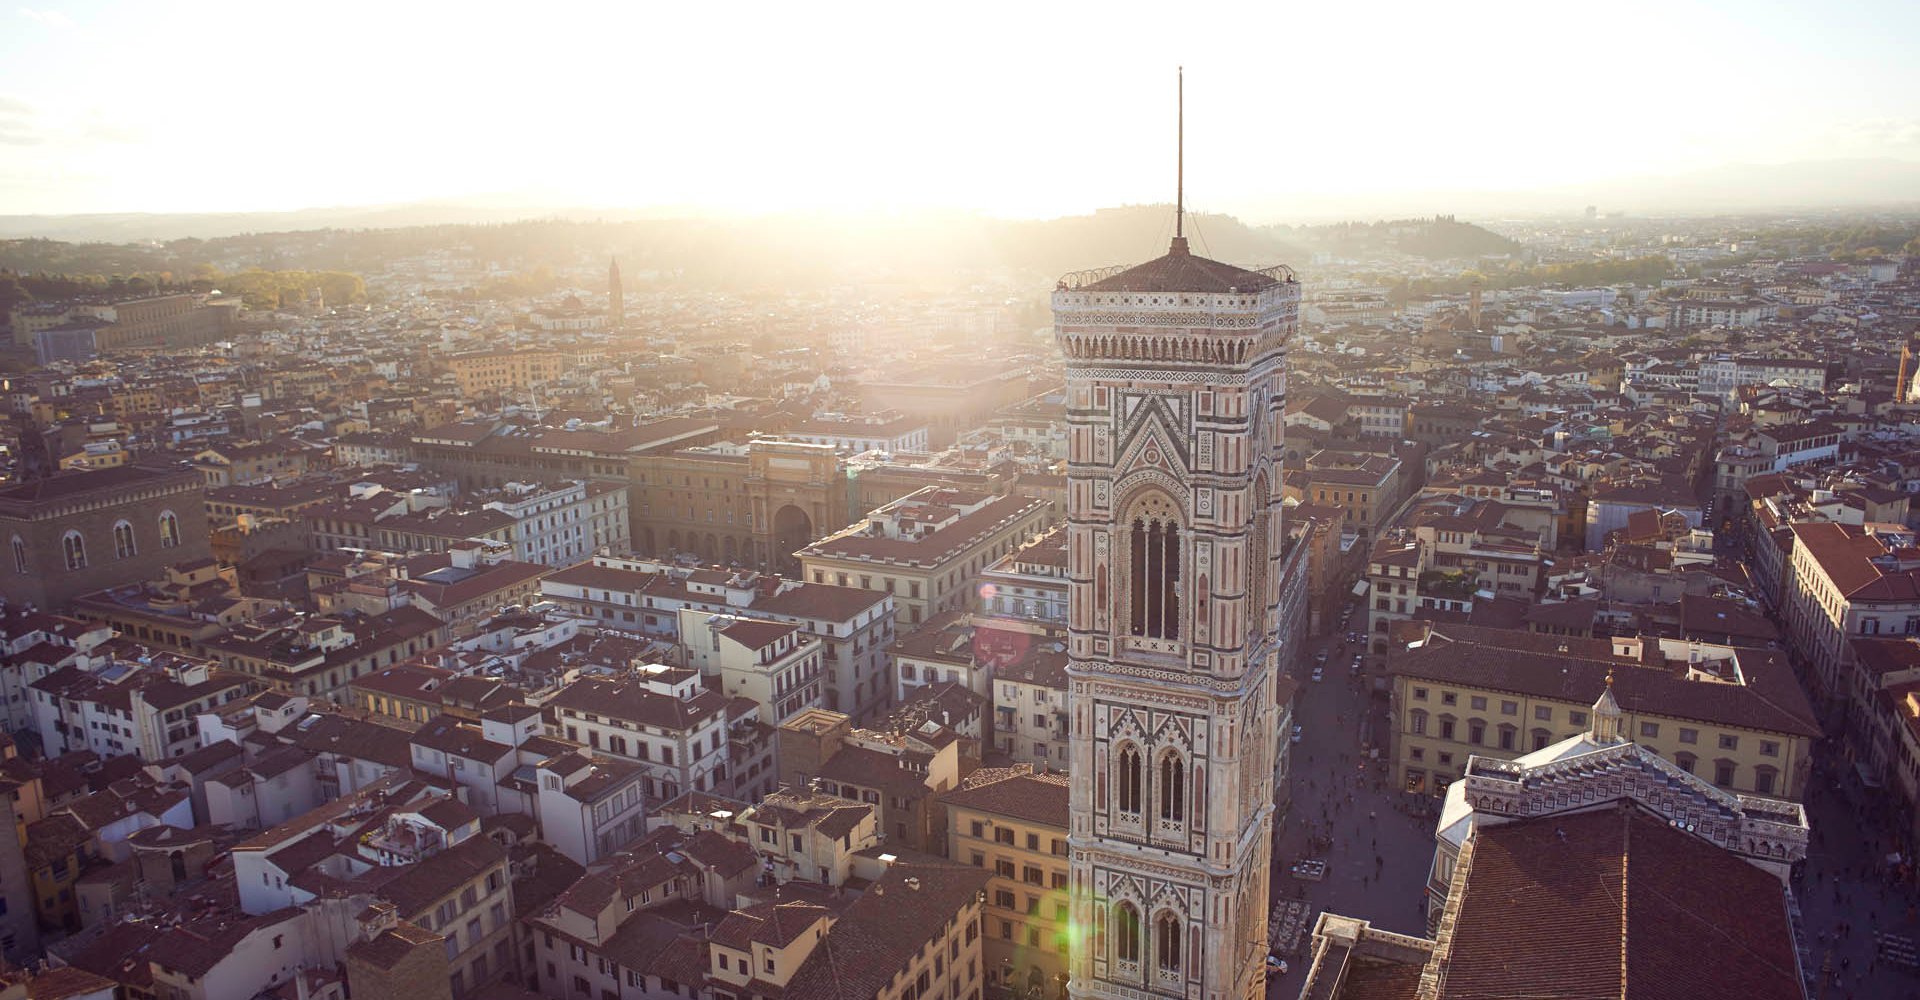 Scorcio di Firenze dall'alto della Cupola del Brunelleschi